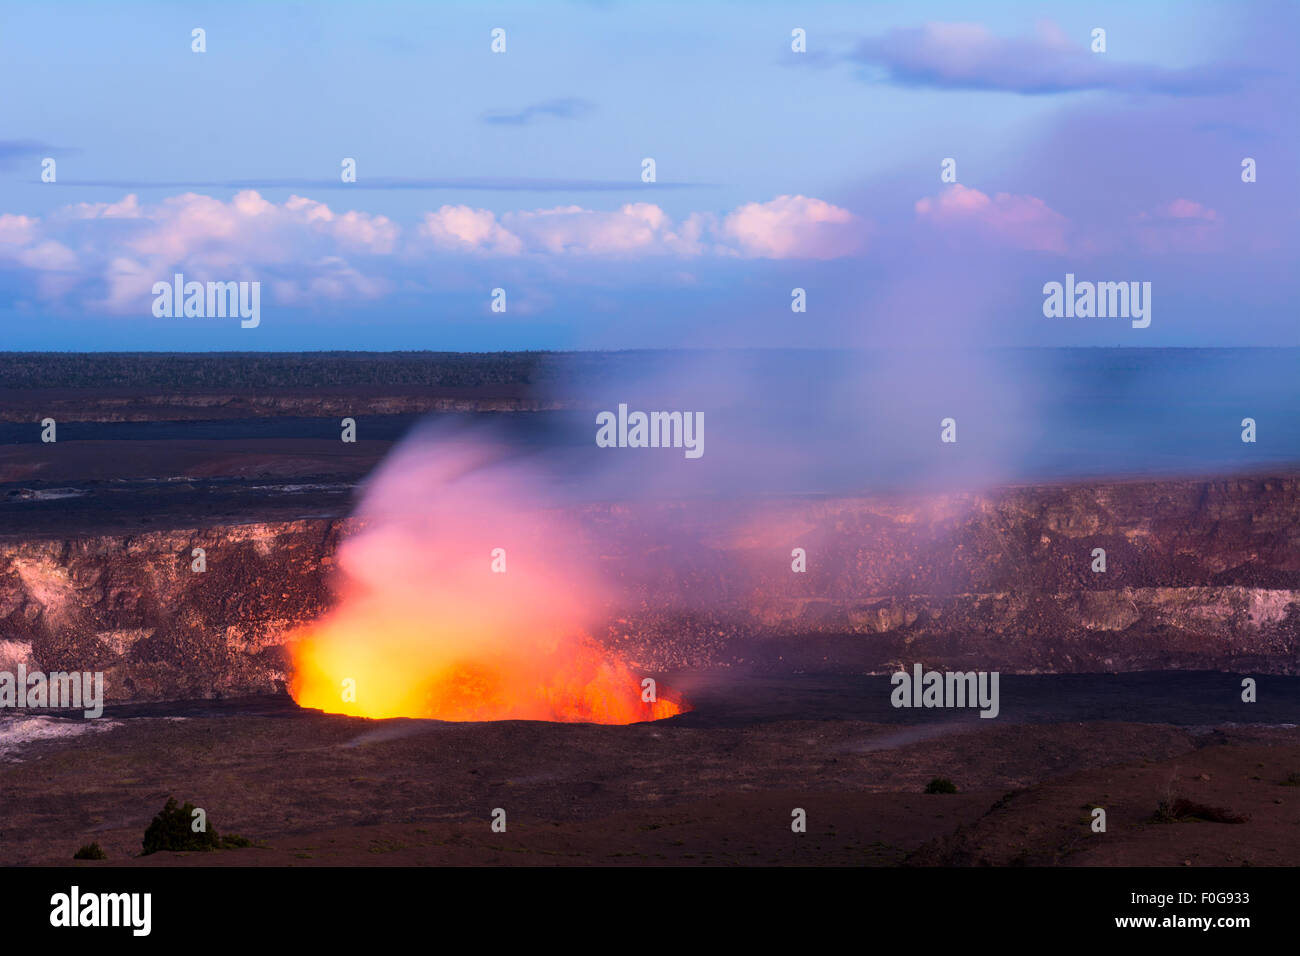 Wenn die Sonne untergeht beginnt Kilauea-Vulkan, die heiße Lava Glut seiner aktiven Schlot, speit Rauch wie geschmolzenes Gestein brennt zeigen. Stockfoto